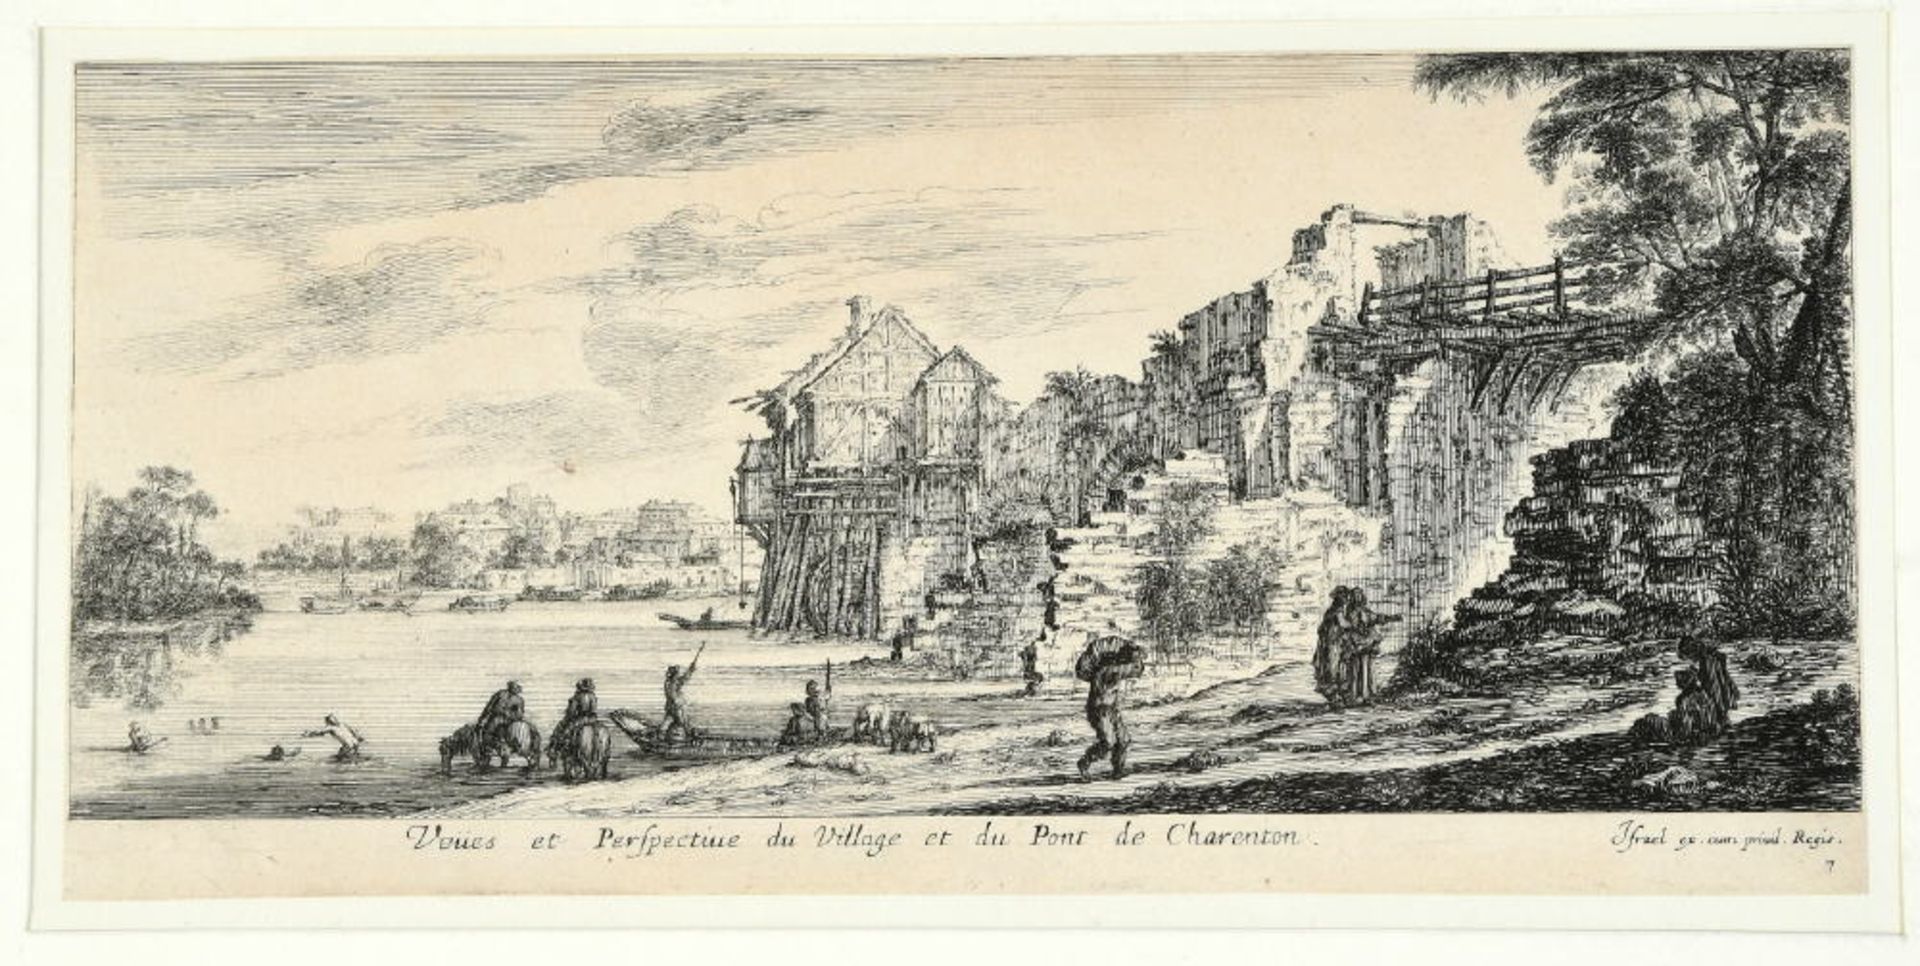 Charenton-le-Pont, Blick auf Dorf und BrückeRadierung, 11 x 25,5 cm, von Israel, 18. Jh.,